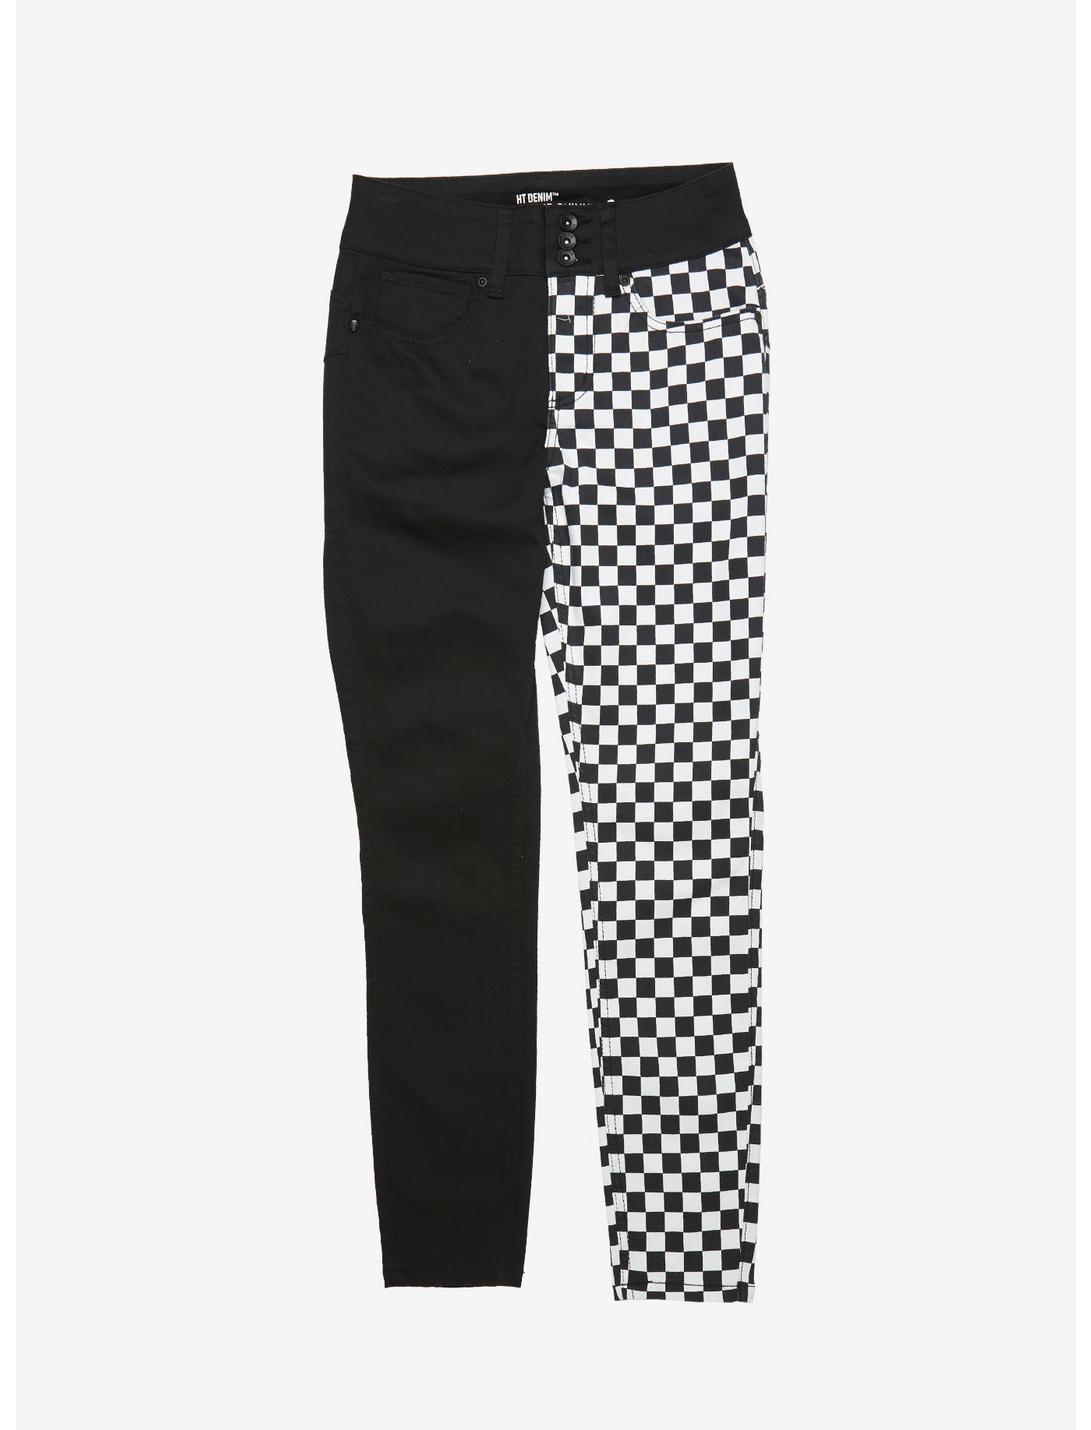 HT Denim Black & White Checkered Split Leg Hi-Rise Super Skinny Jeans Plus Size, MULTI, hi-res